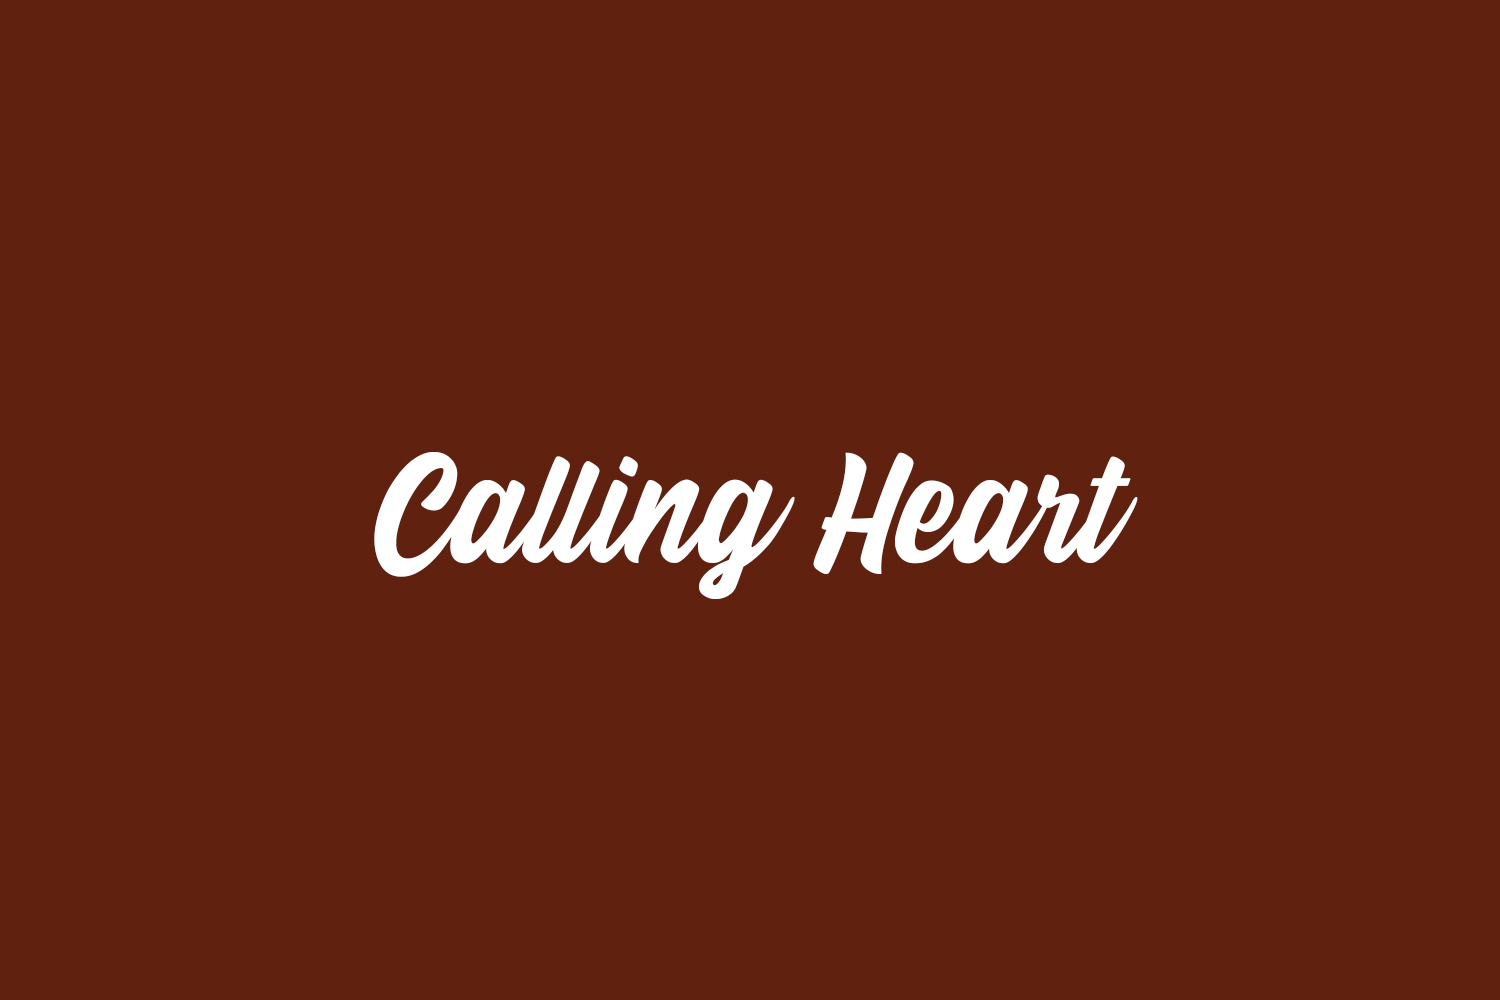 Calling Heart Free Font